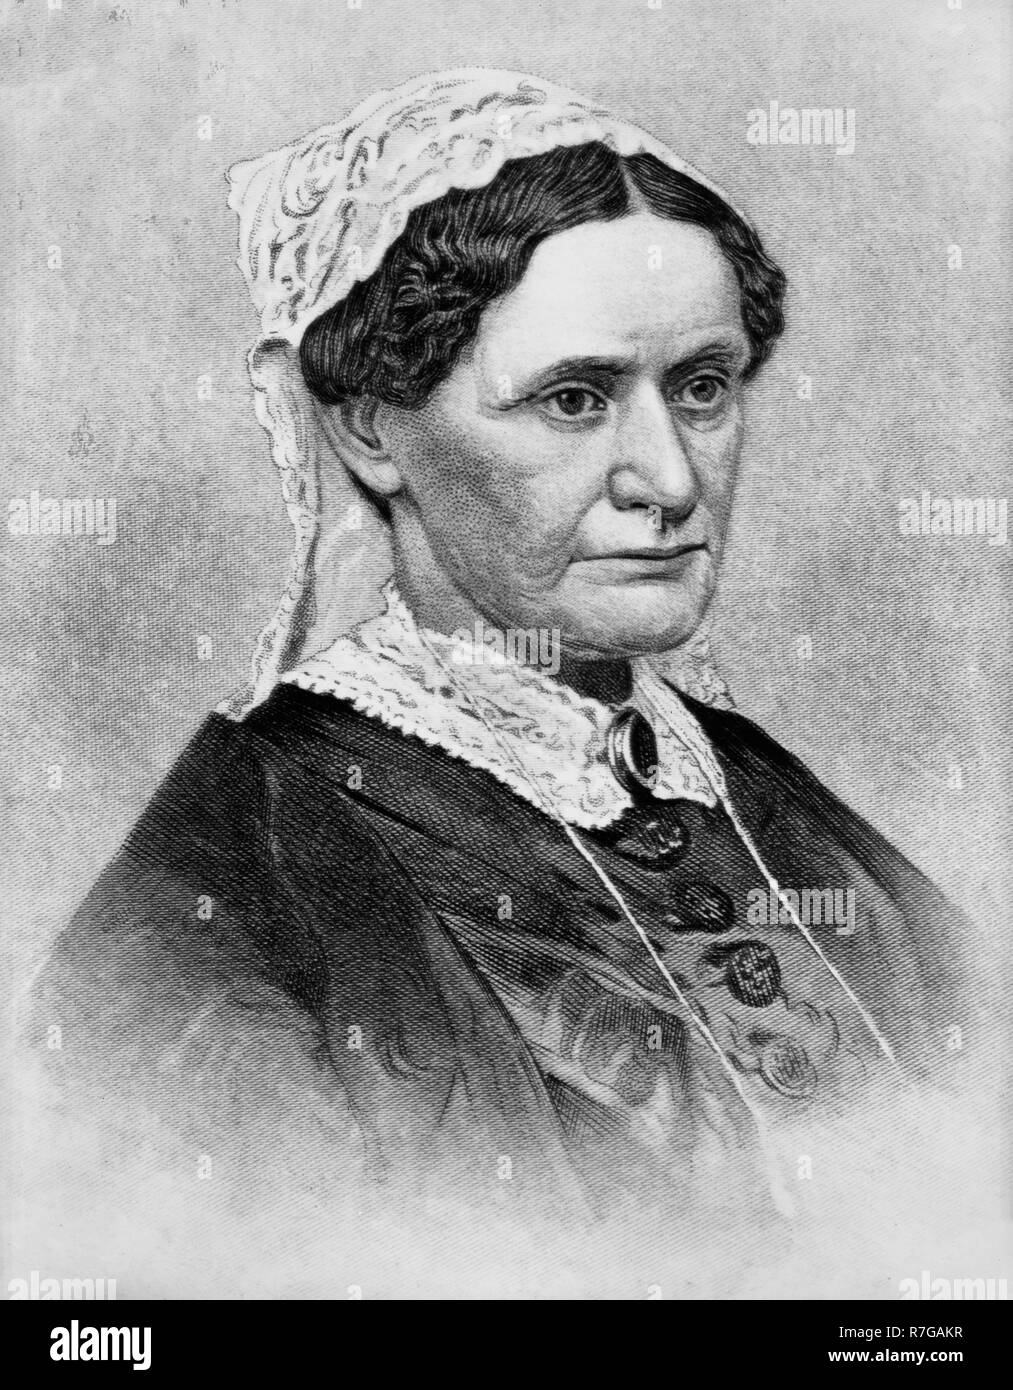 Eliza McCardle Johnson (4 ottobre 1810 - firstJanuary 15, 1876) è stata la First Lady degli Stati Uniti, la seconda Lady degli Stati Uniti, e la moglie di Andrew Johnson, il diciassettesimo Presidente degli Stati Uniti. Foto Stock